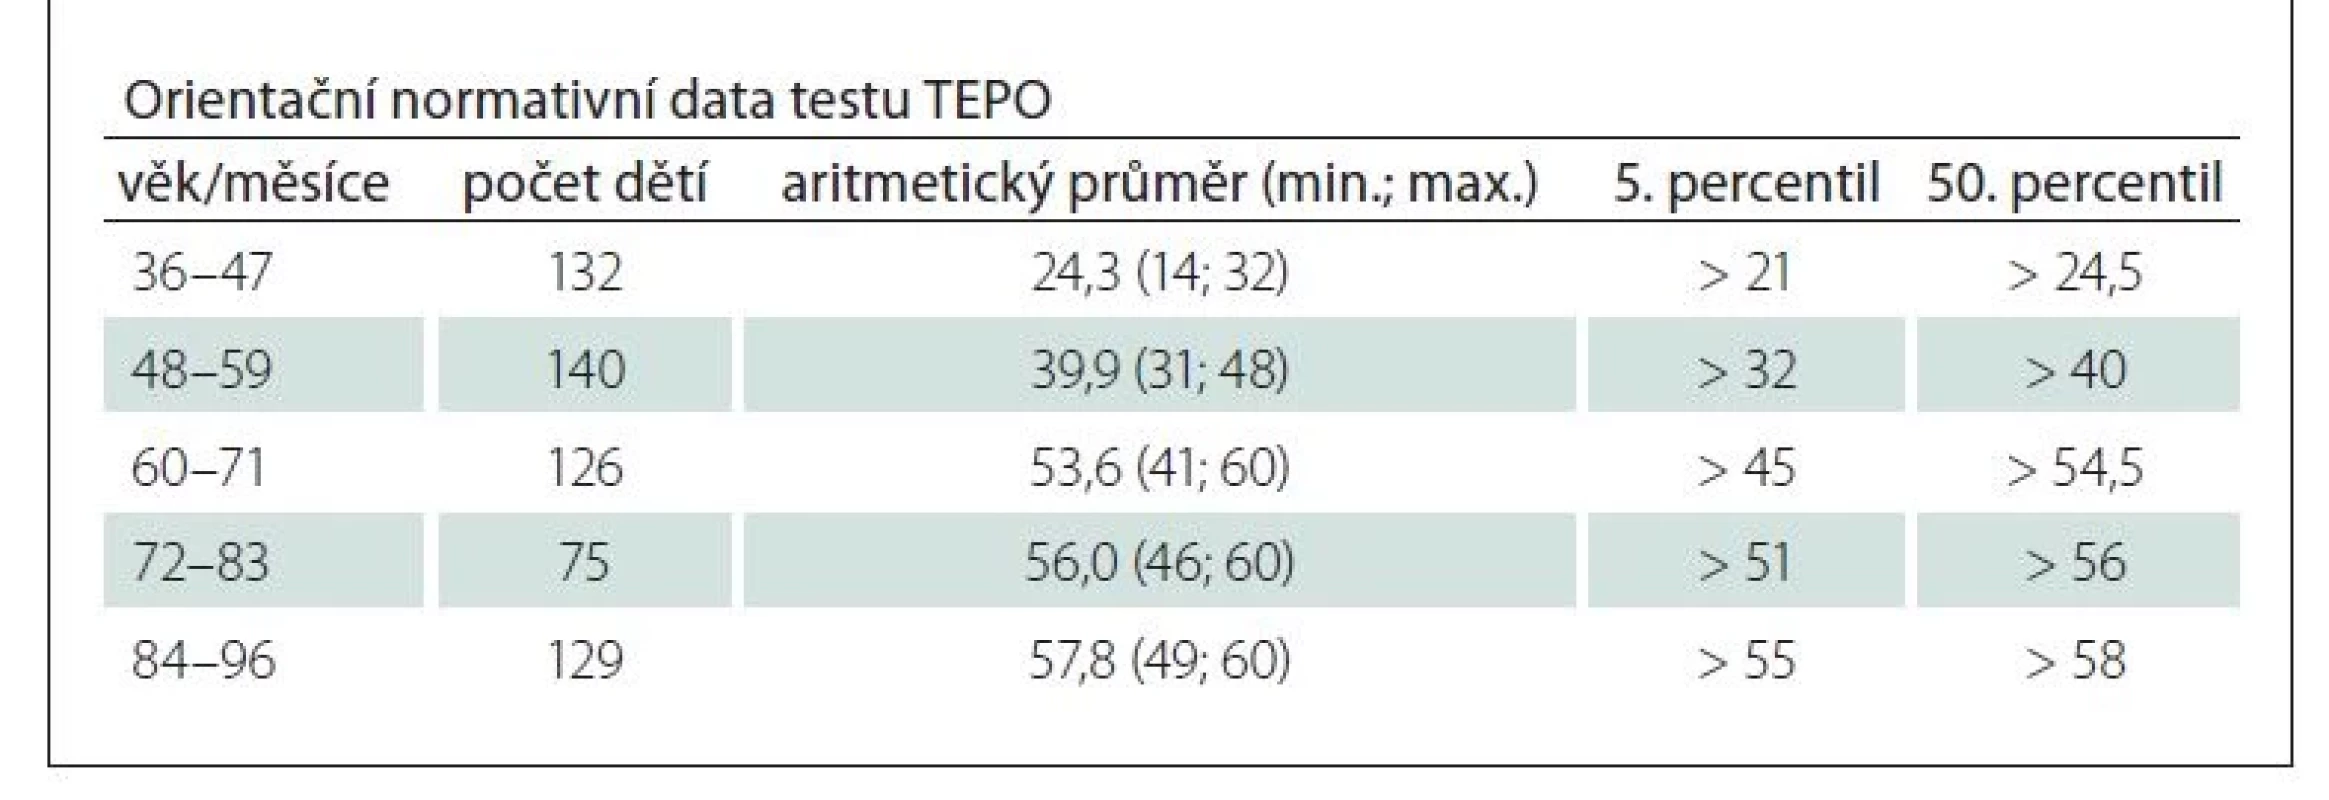 Orientační normativní data testu TEPO vypočítána ze skupiny 1, zobrazují
aritmetický průměr, minimální, maximální počet bodů a hraniční 5. a 50. percentil.